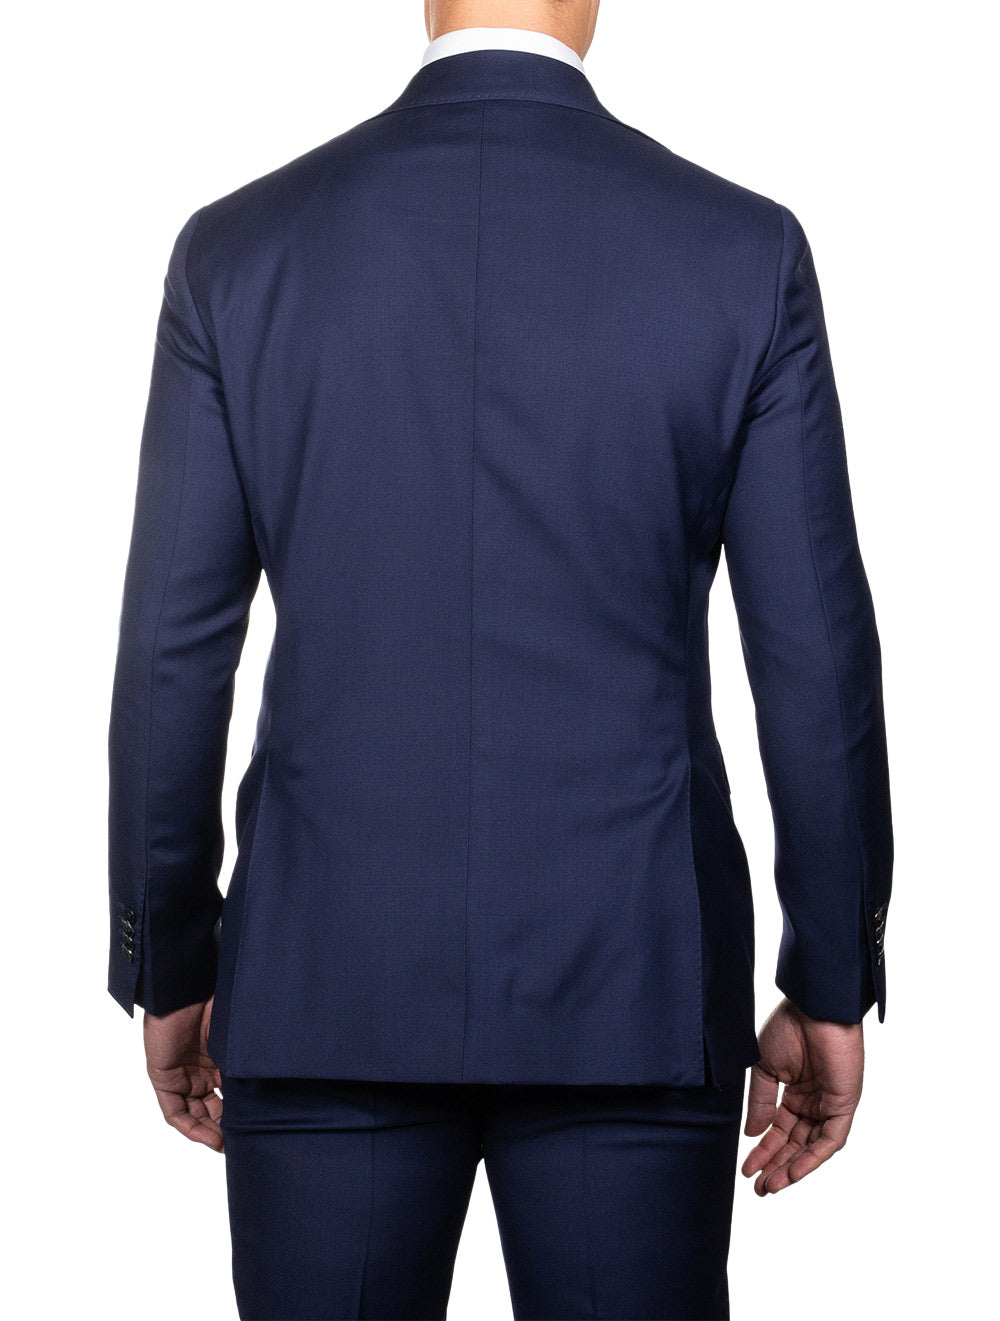 Louis Copeland Plain Suit Blue 2 piece 2 button notch lapel soft shoulder flap pockets 3